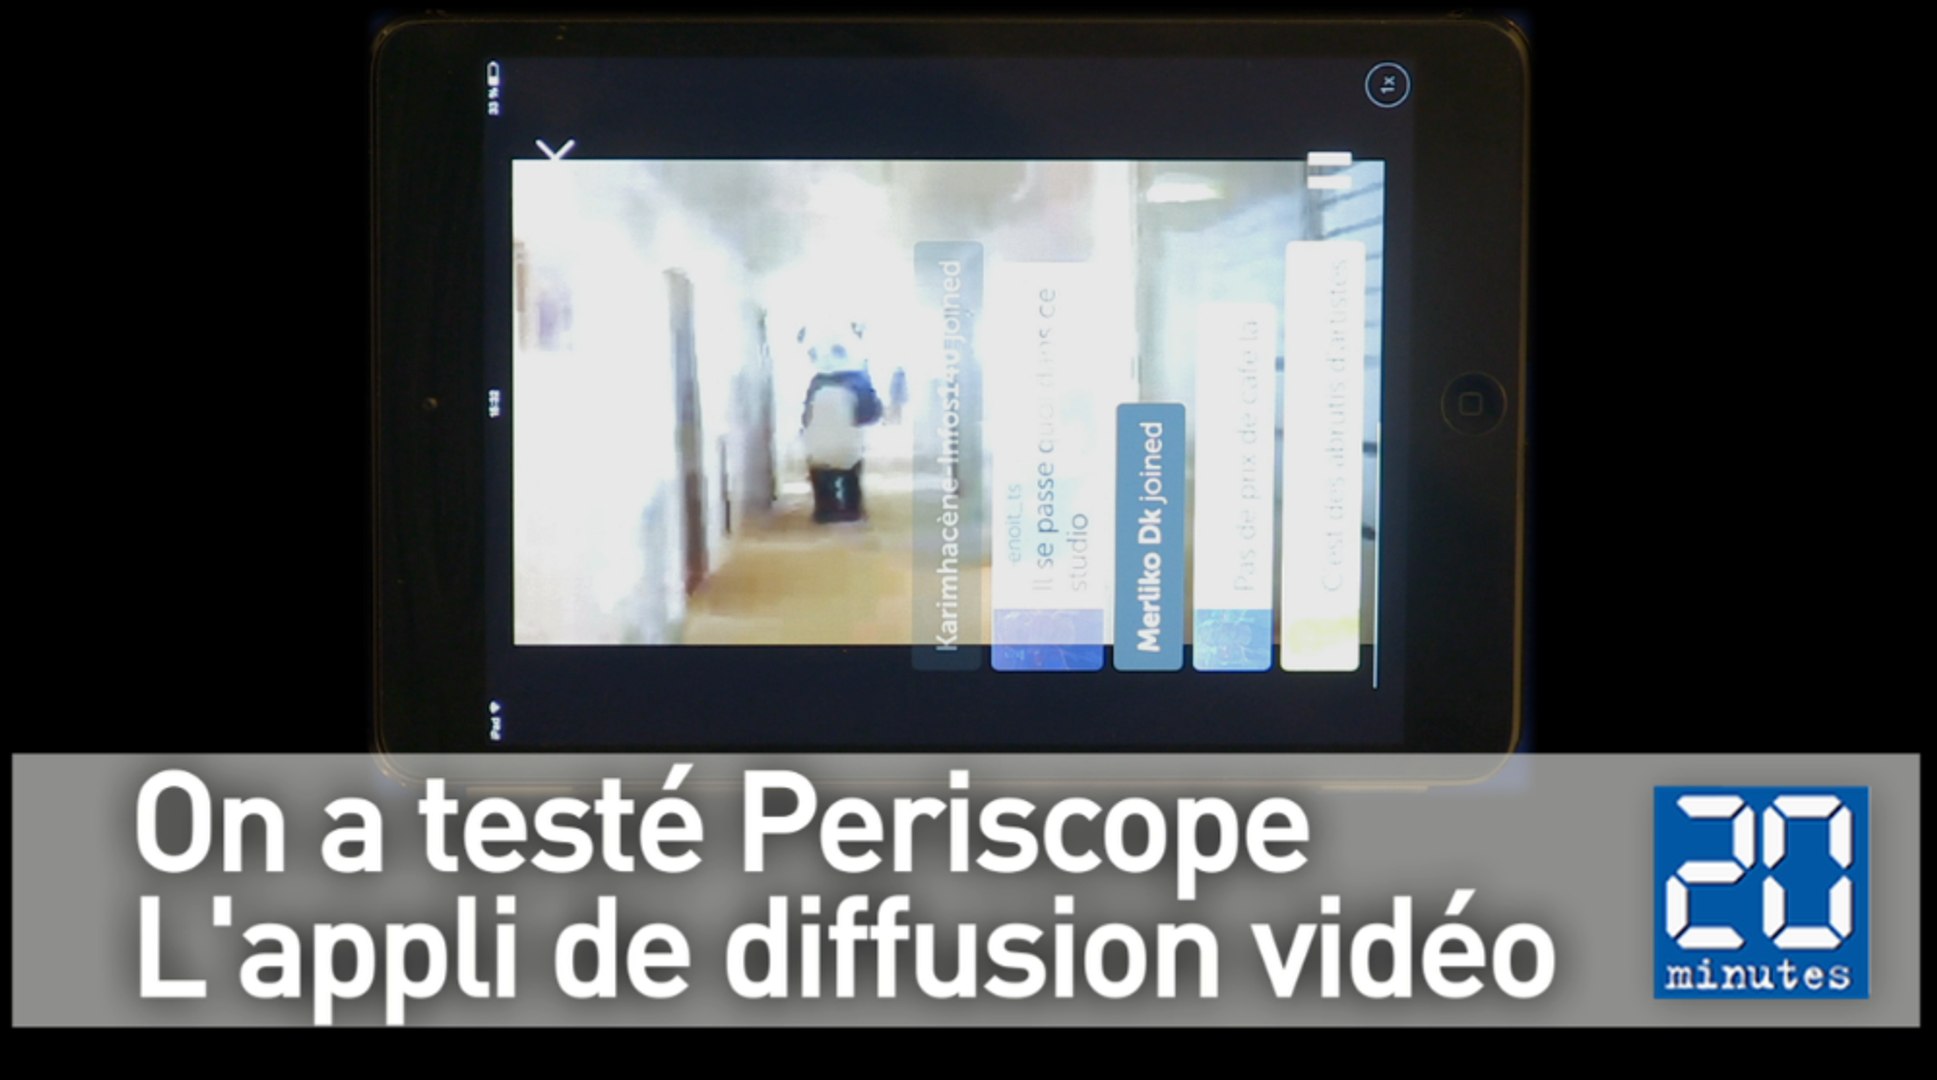 On a testé Periscope, la nouvelle appli de diffusion vidéo en direct -  Vidéo Dailymotion